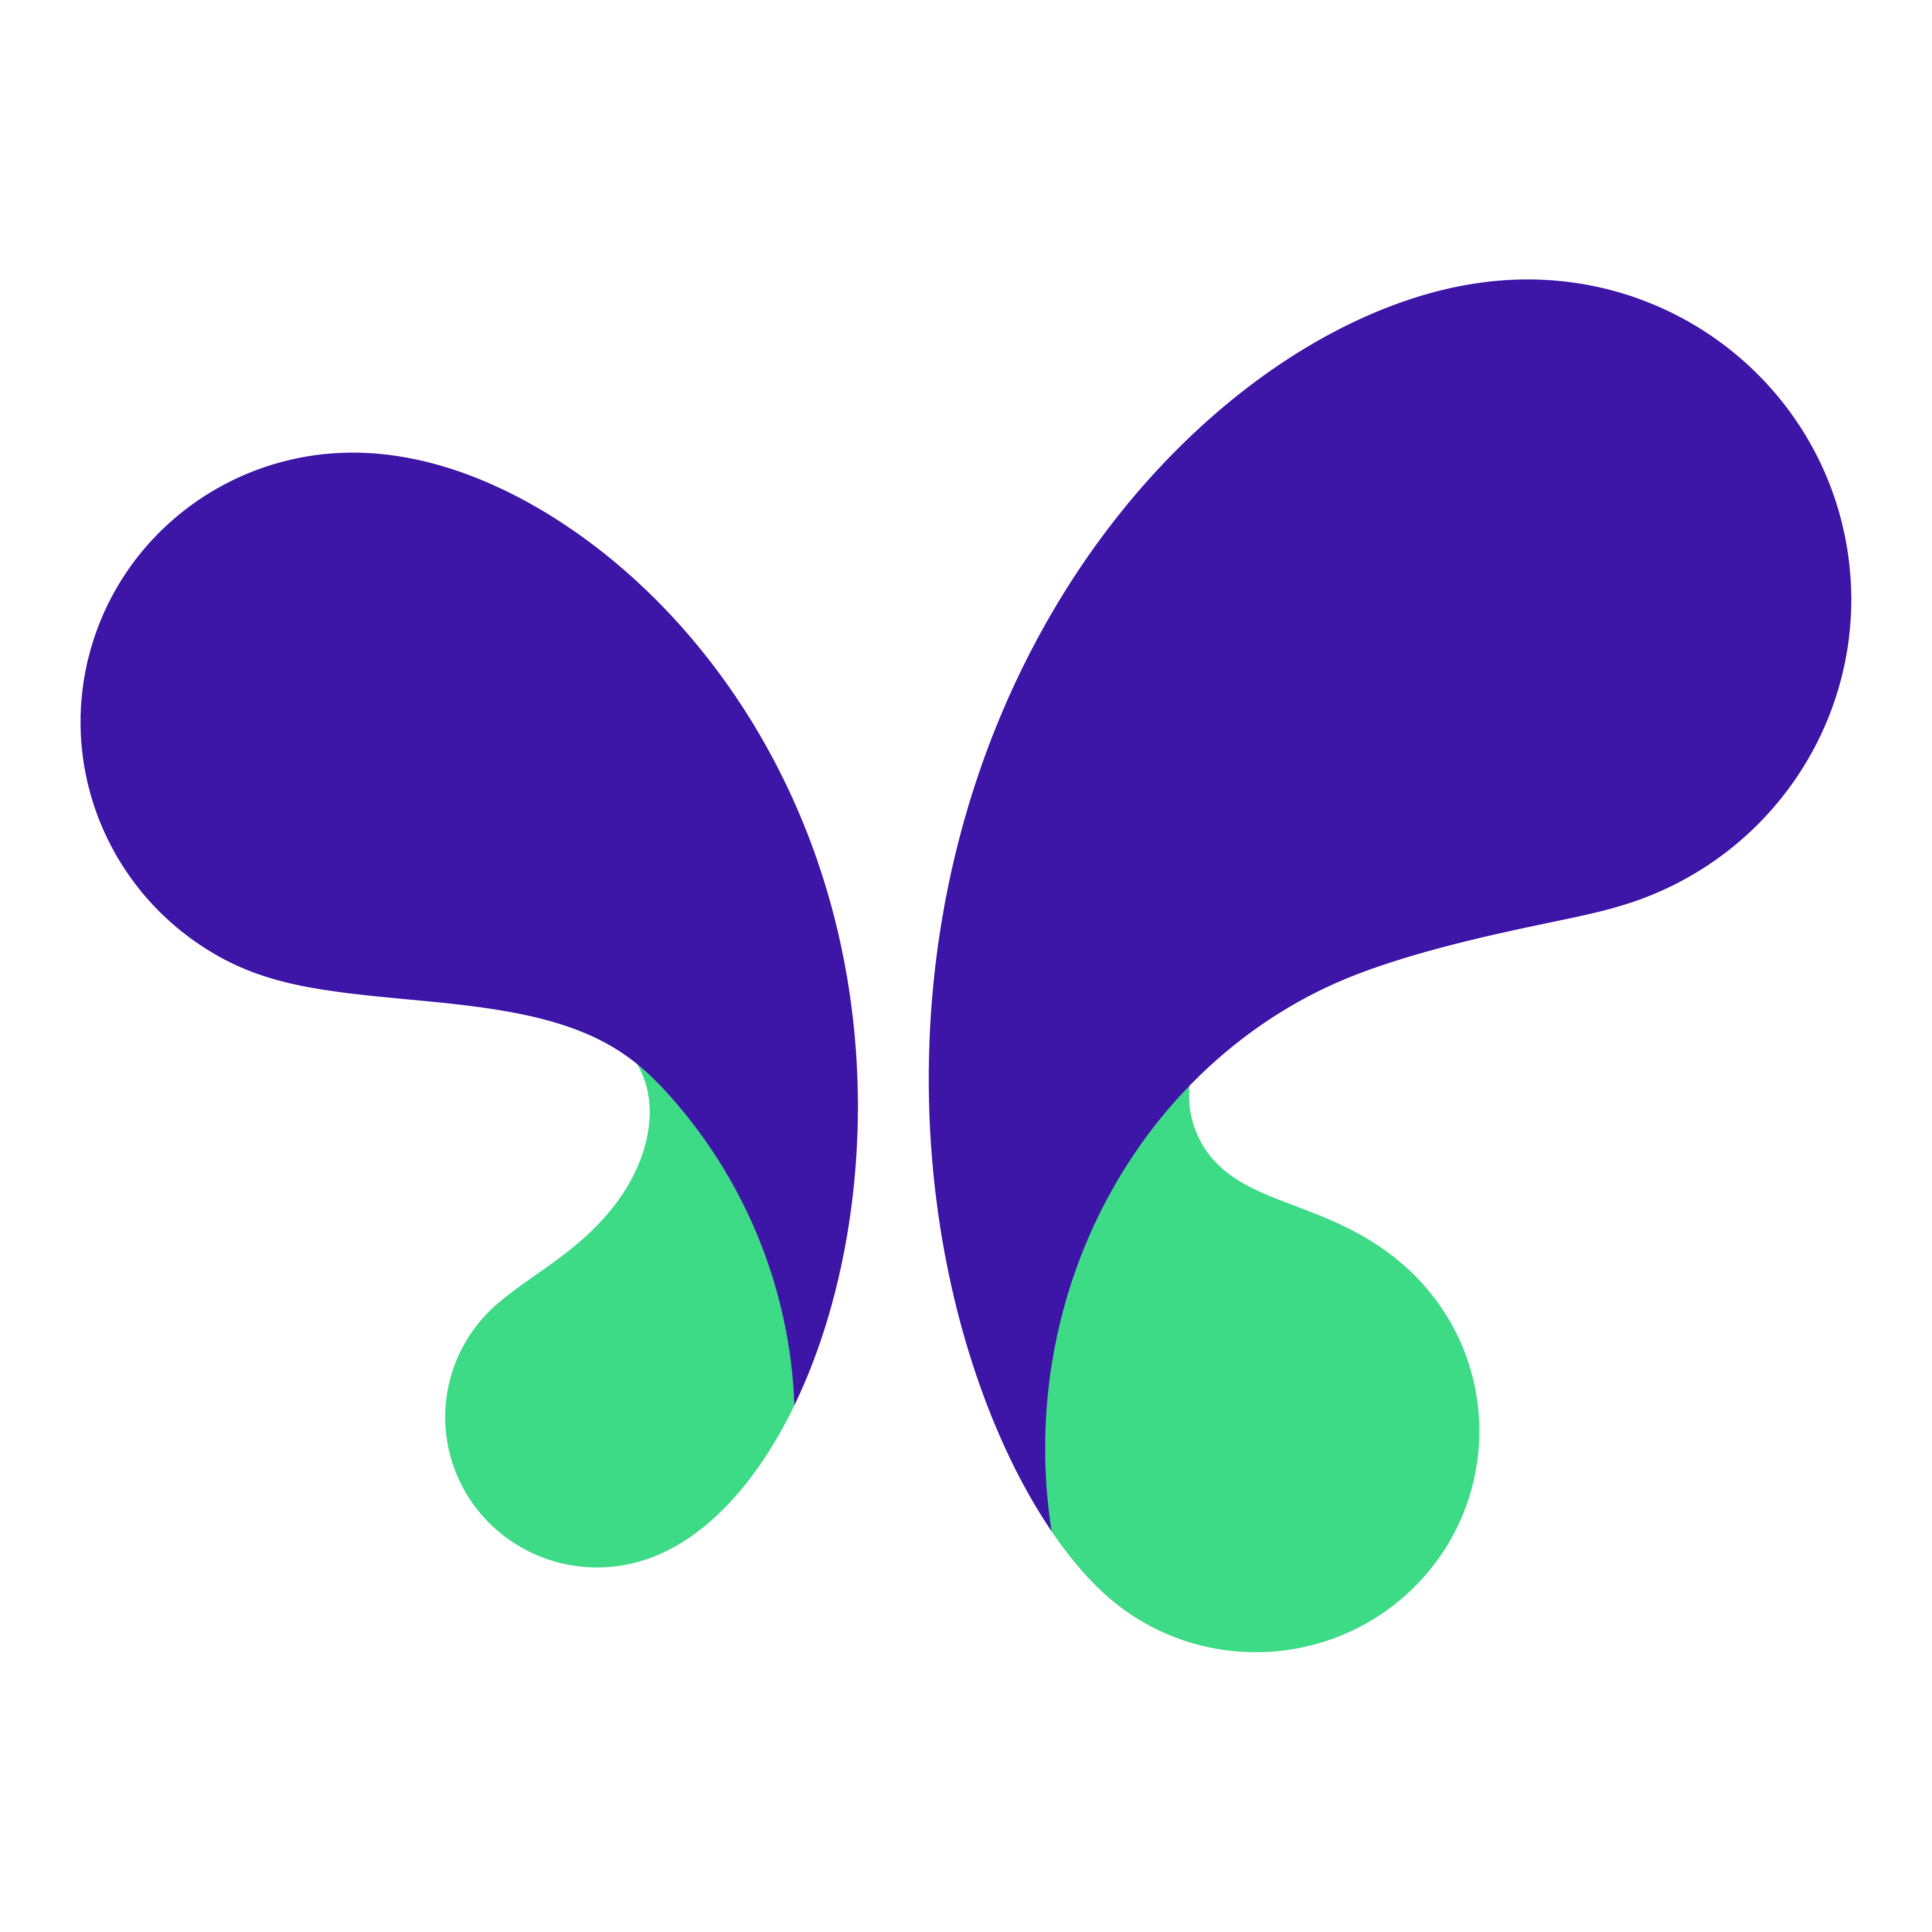 MakerSuite logosu